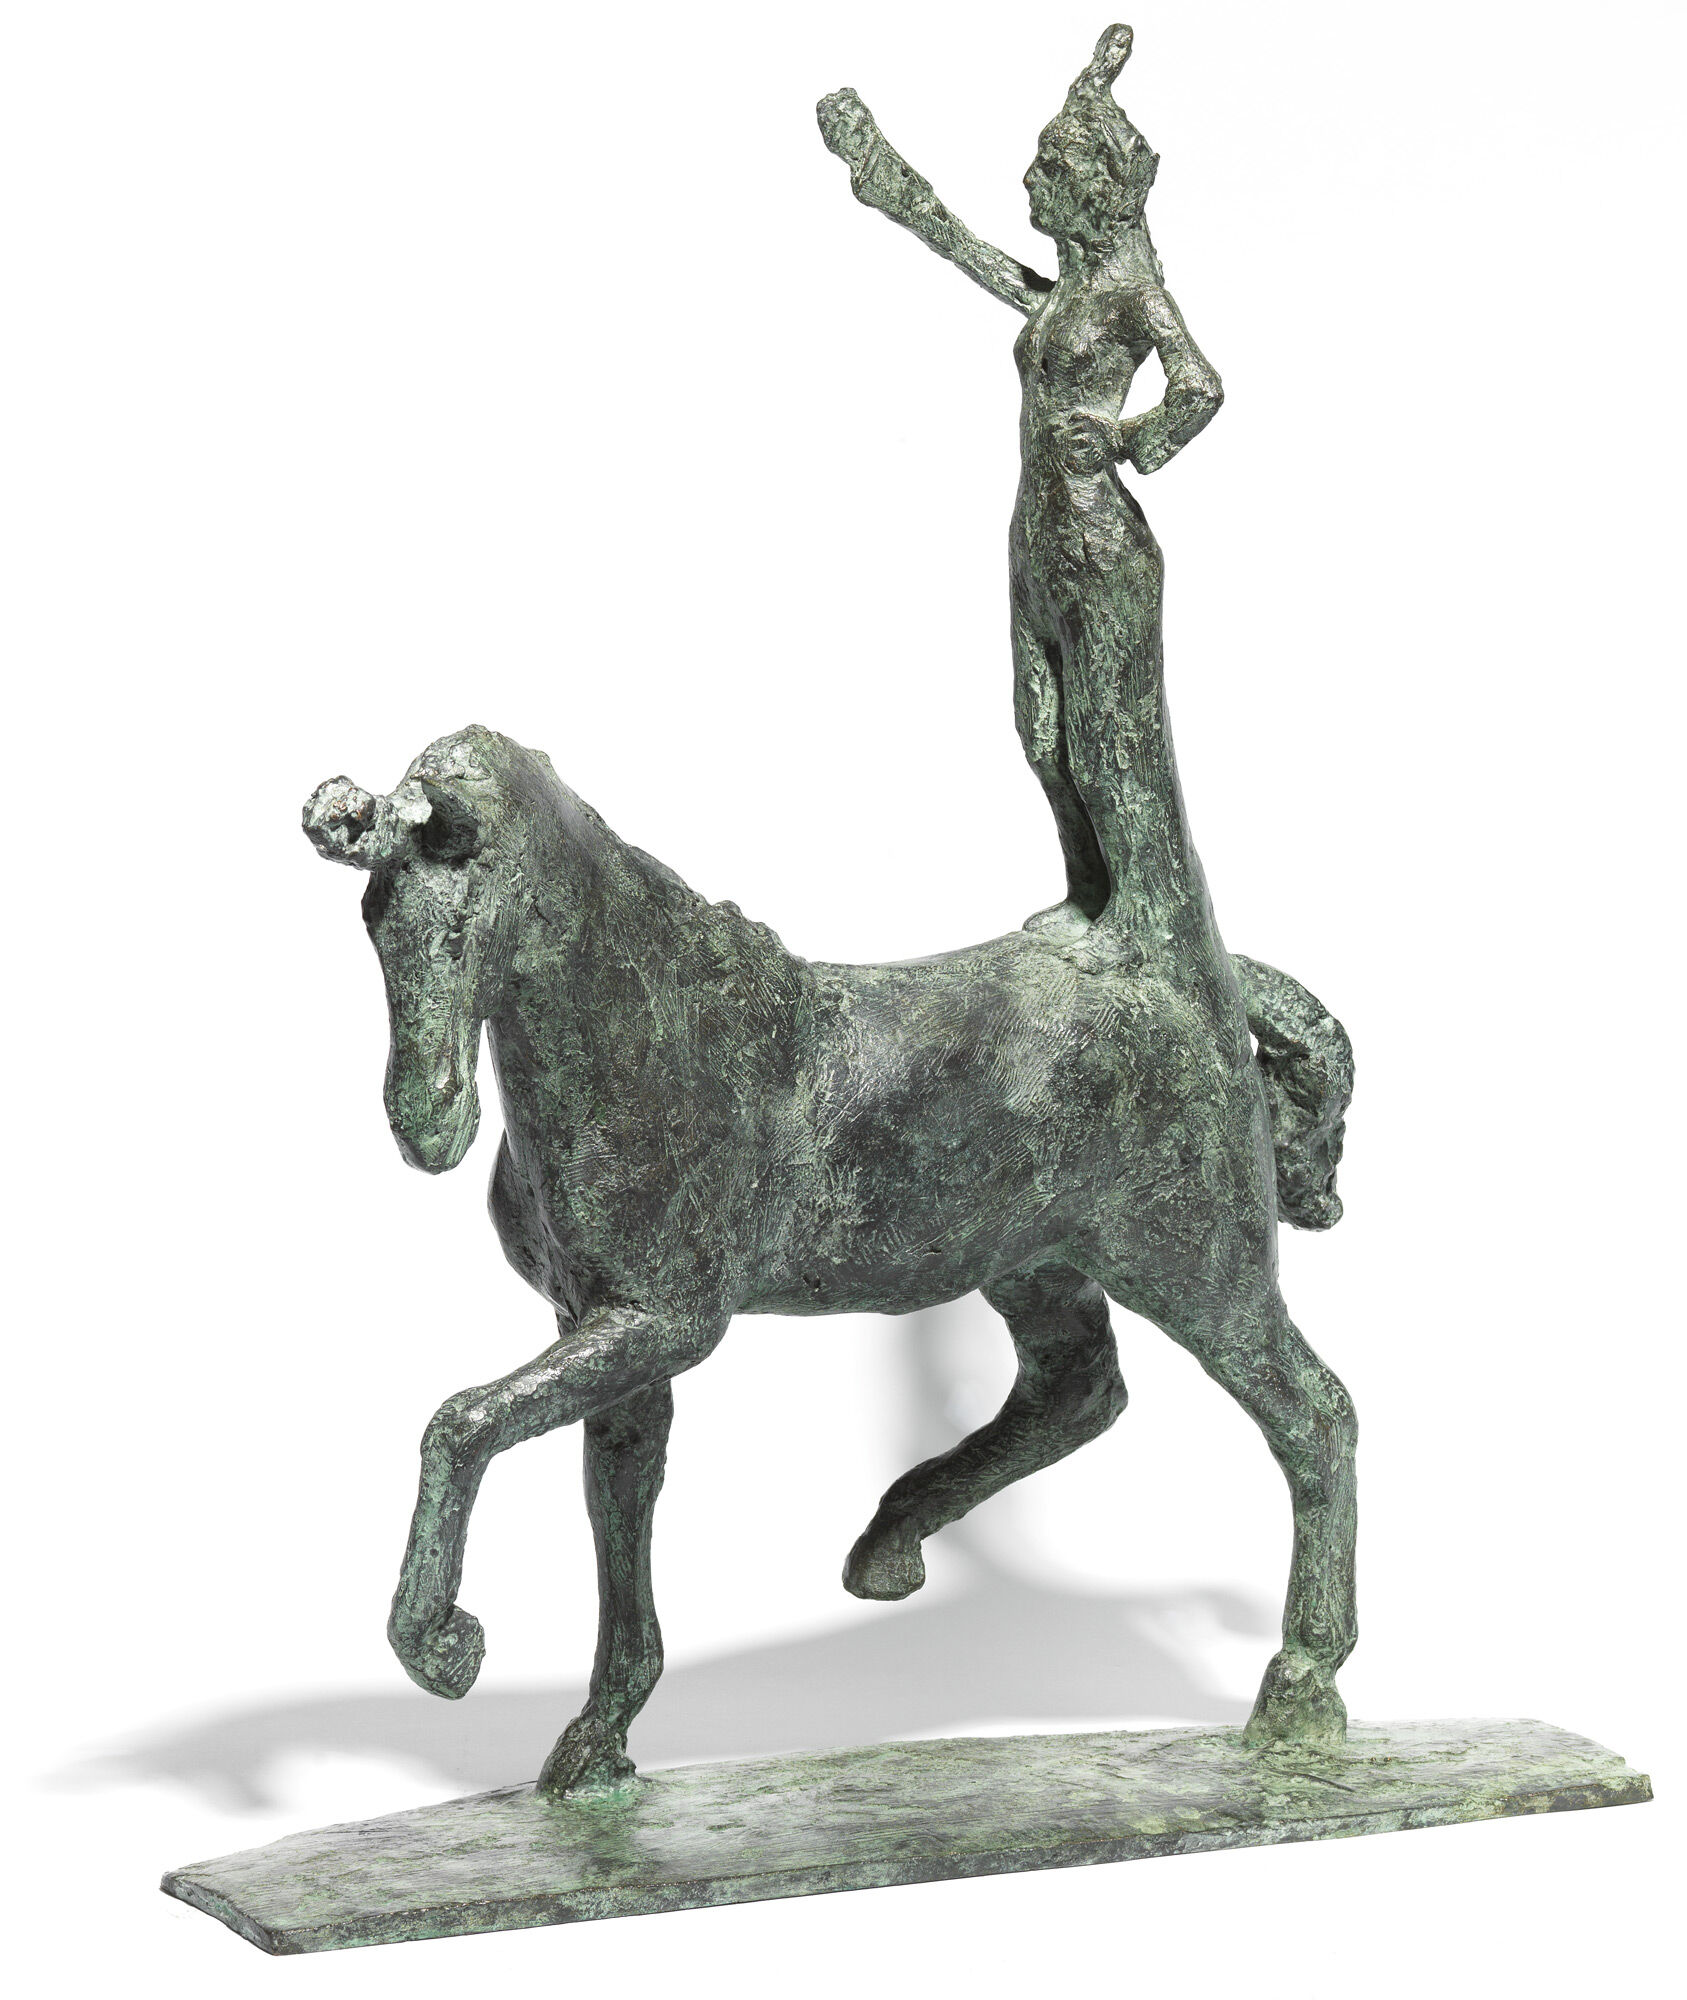 Skulptur "Little Trick Rider" (2019), bronze von Thomas Jastram